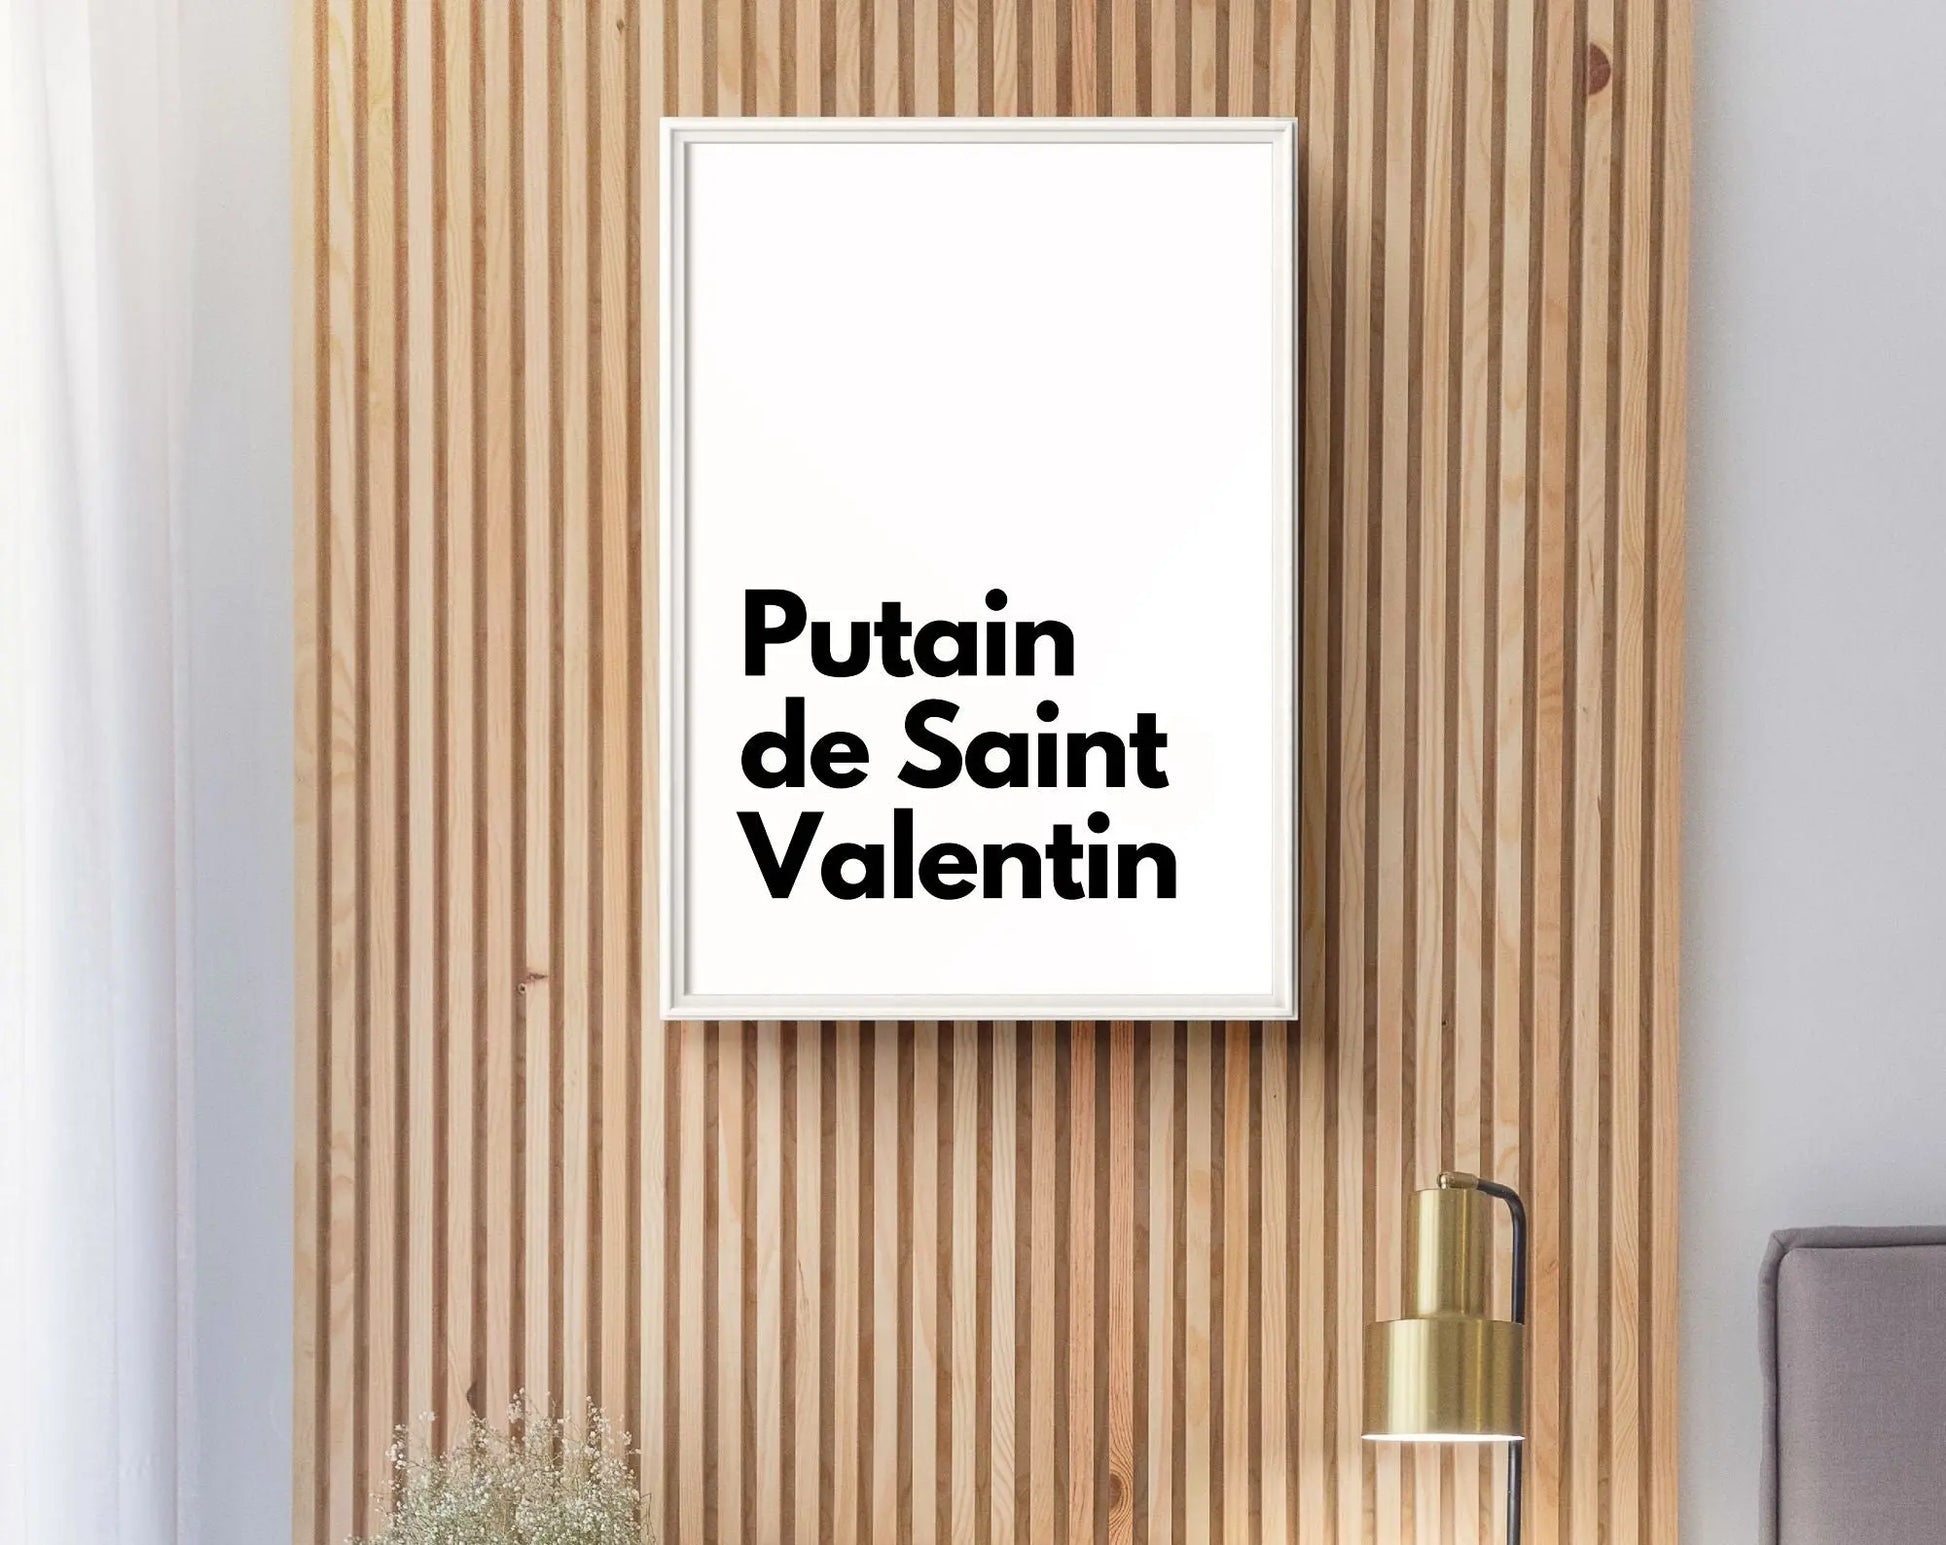 Putain de Saint-Valentin - Affiche Saint-Valentin FLTMfrance